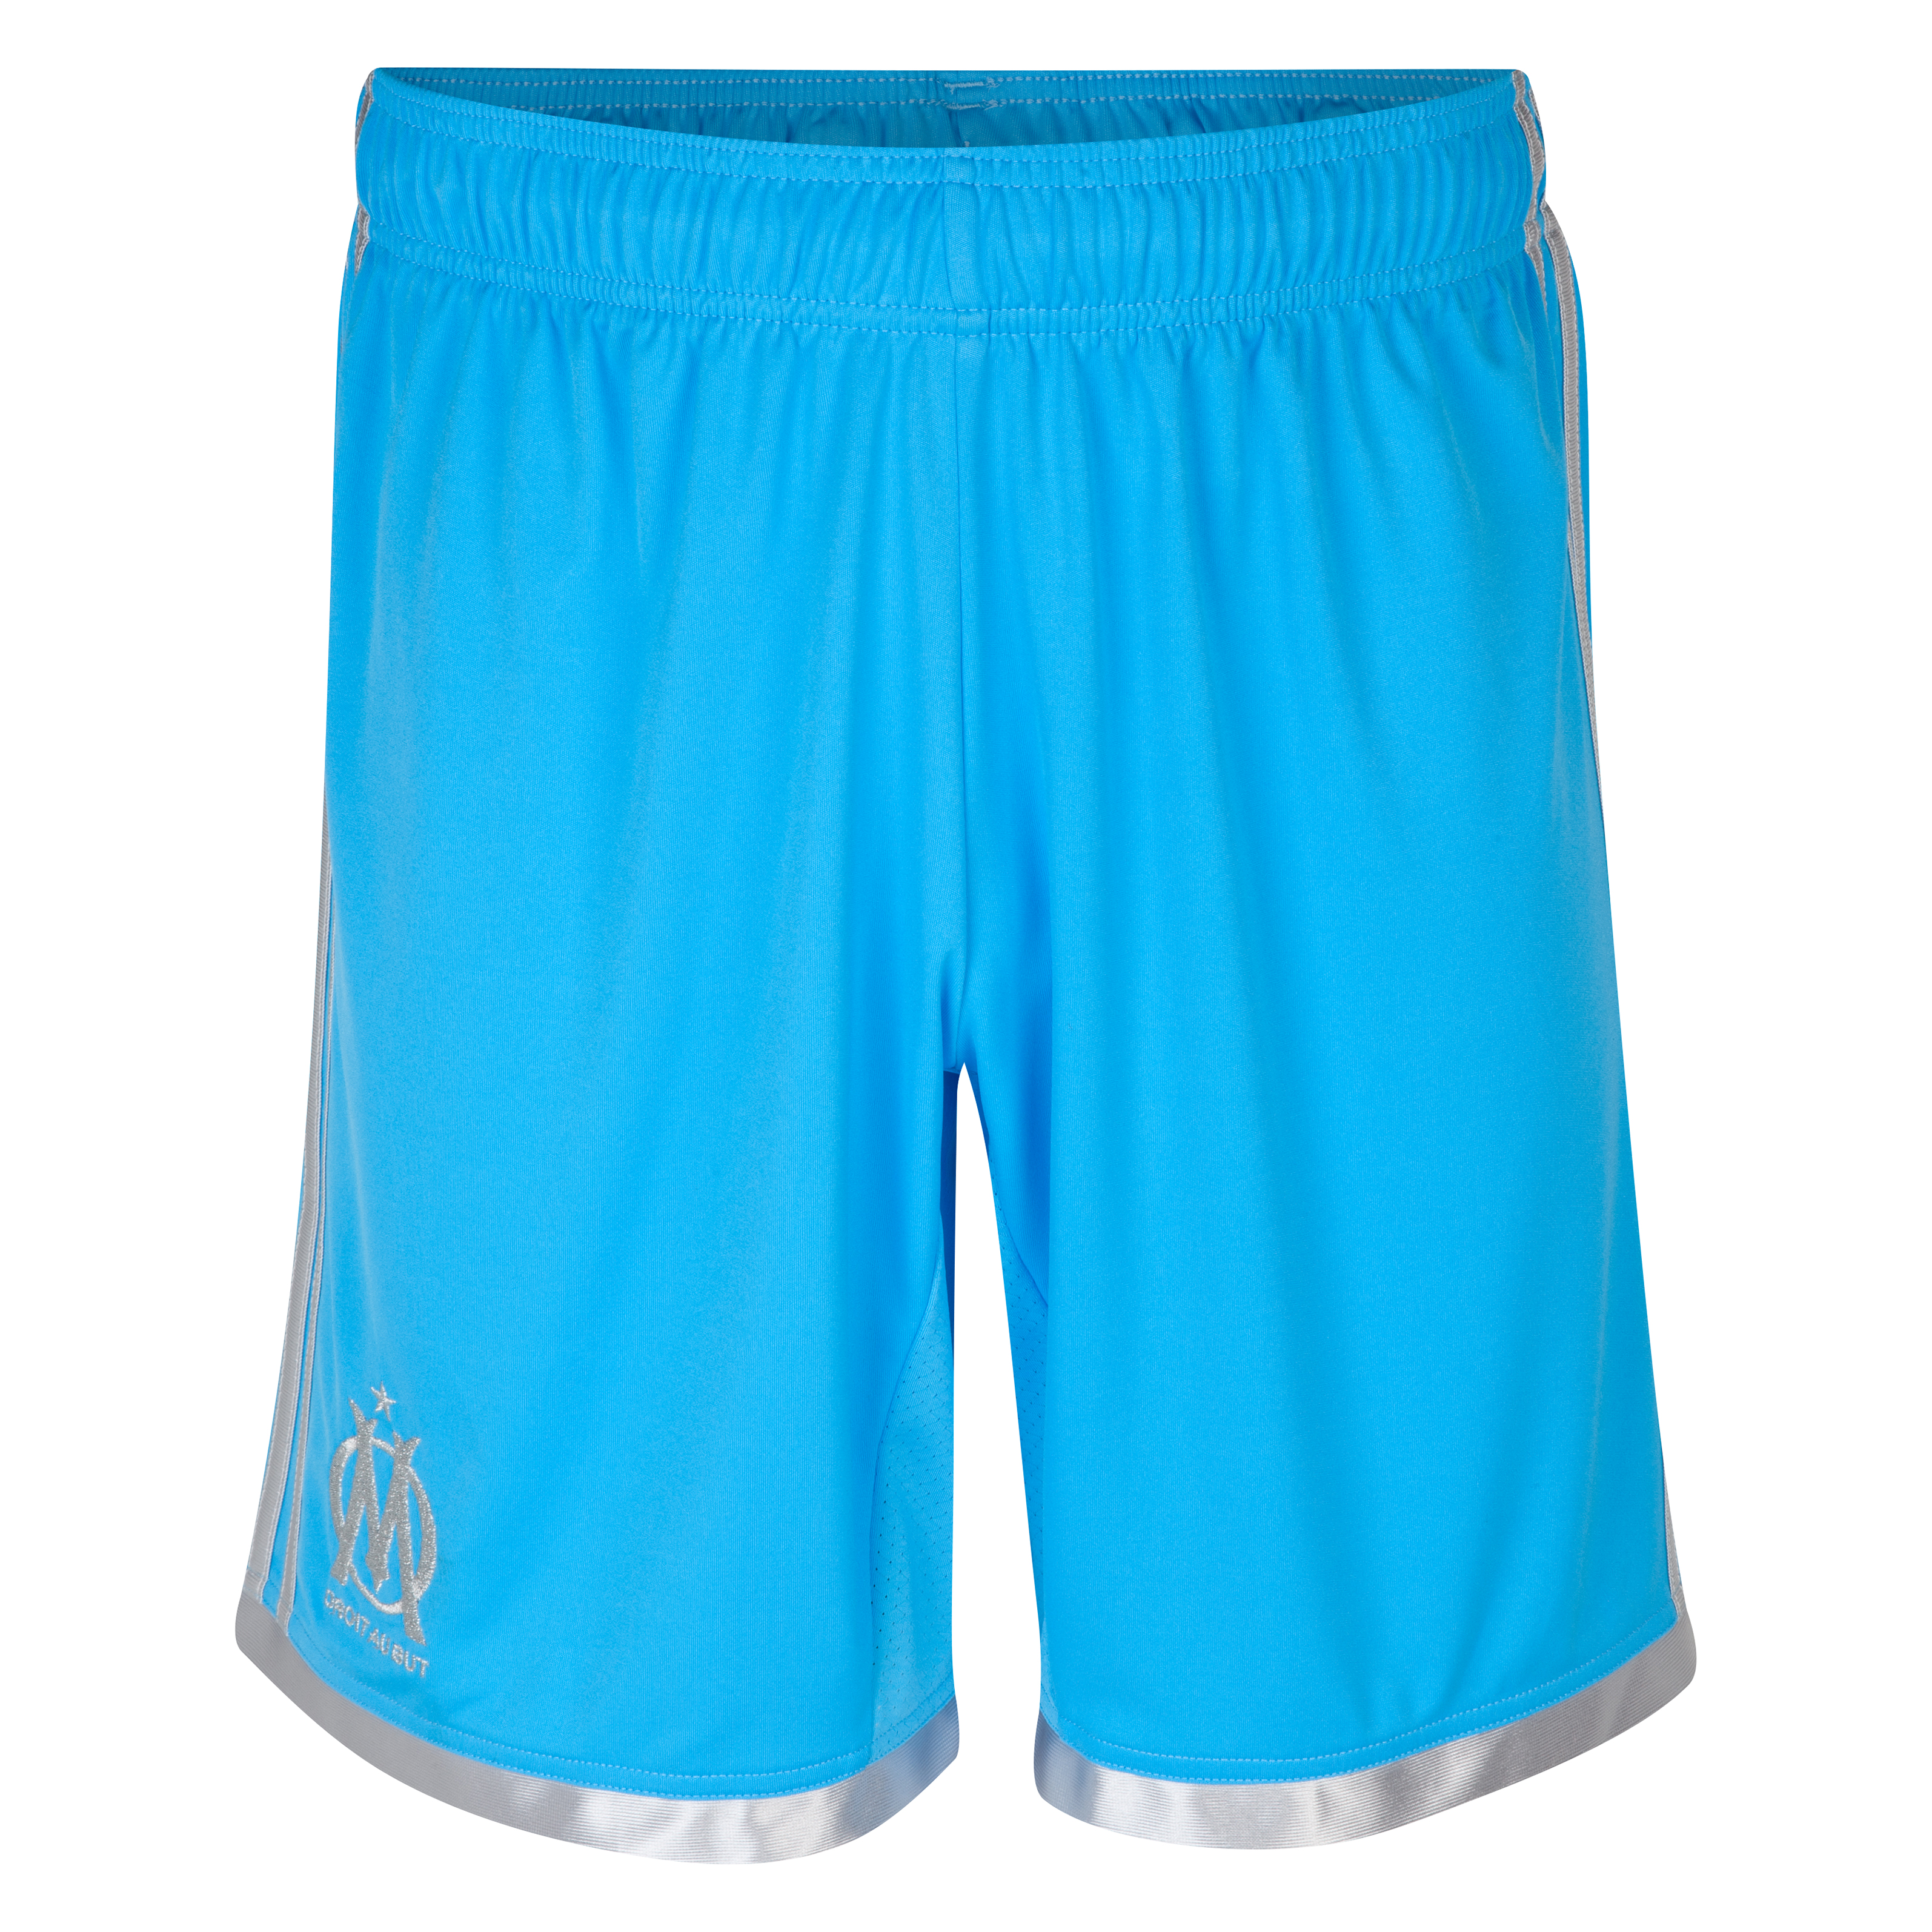 Olympique de Marseille Third Shorts 2013/14 - Mens Blue